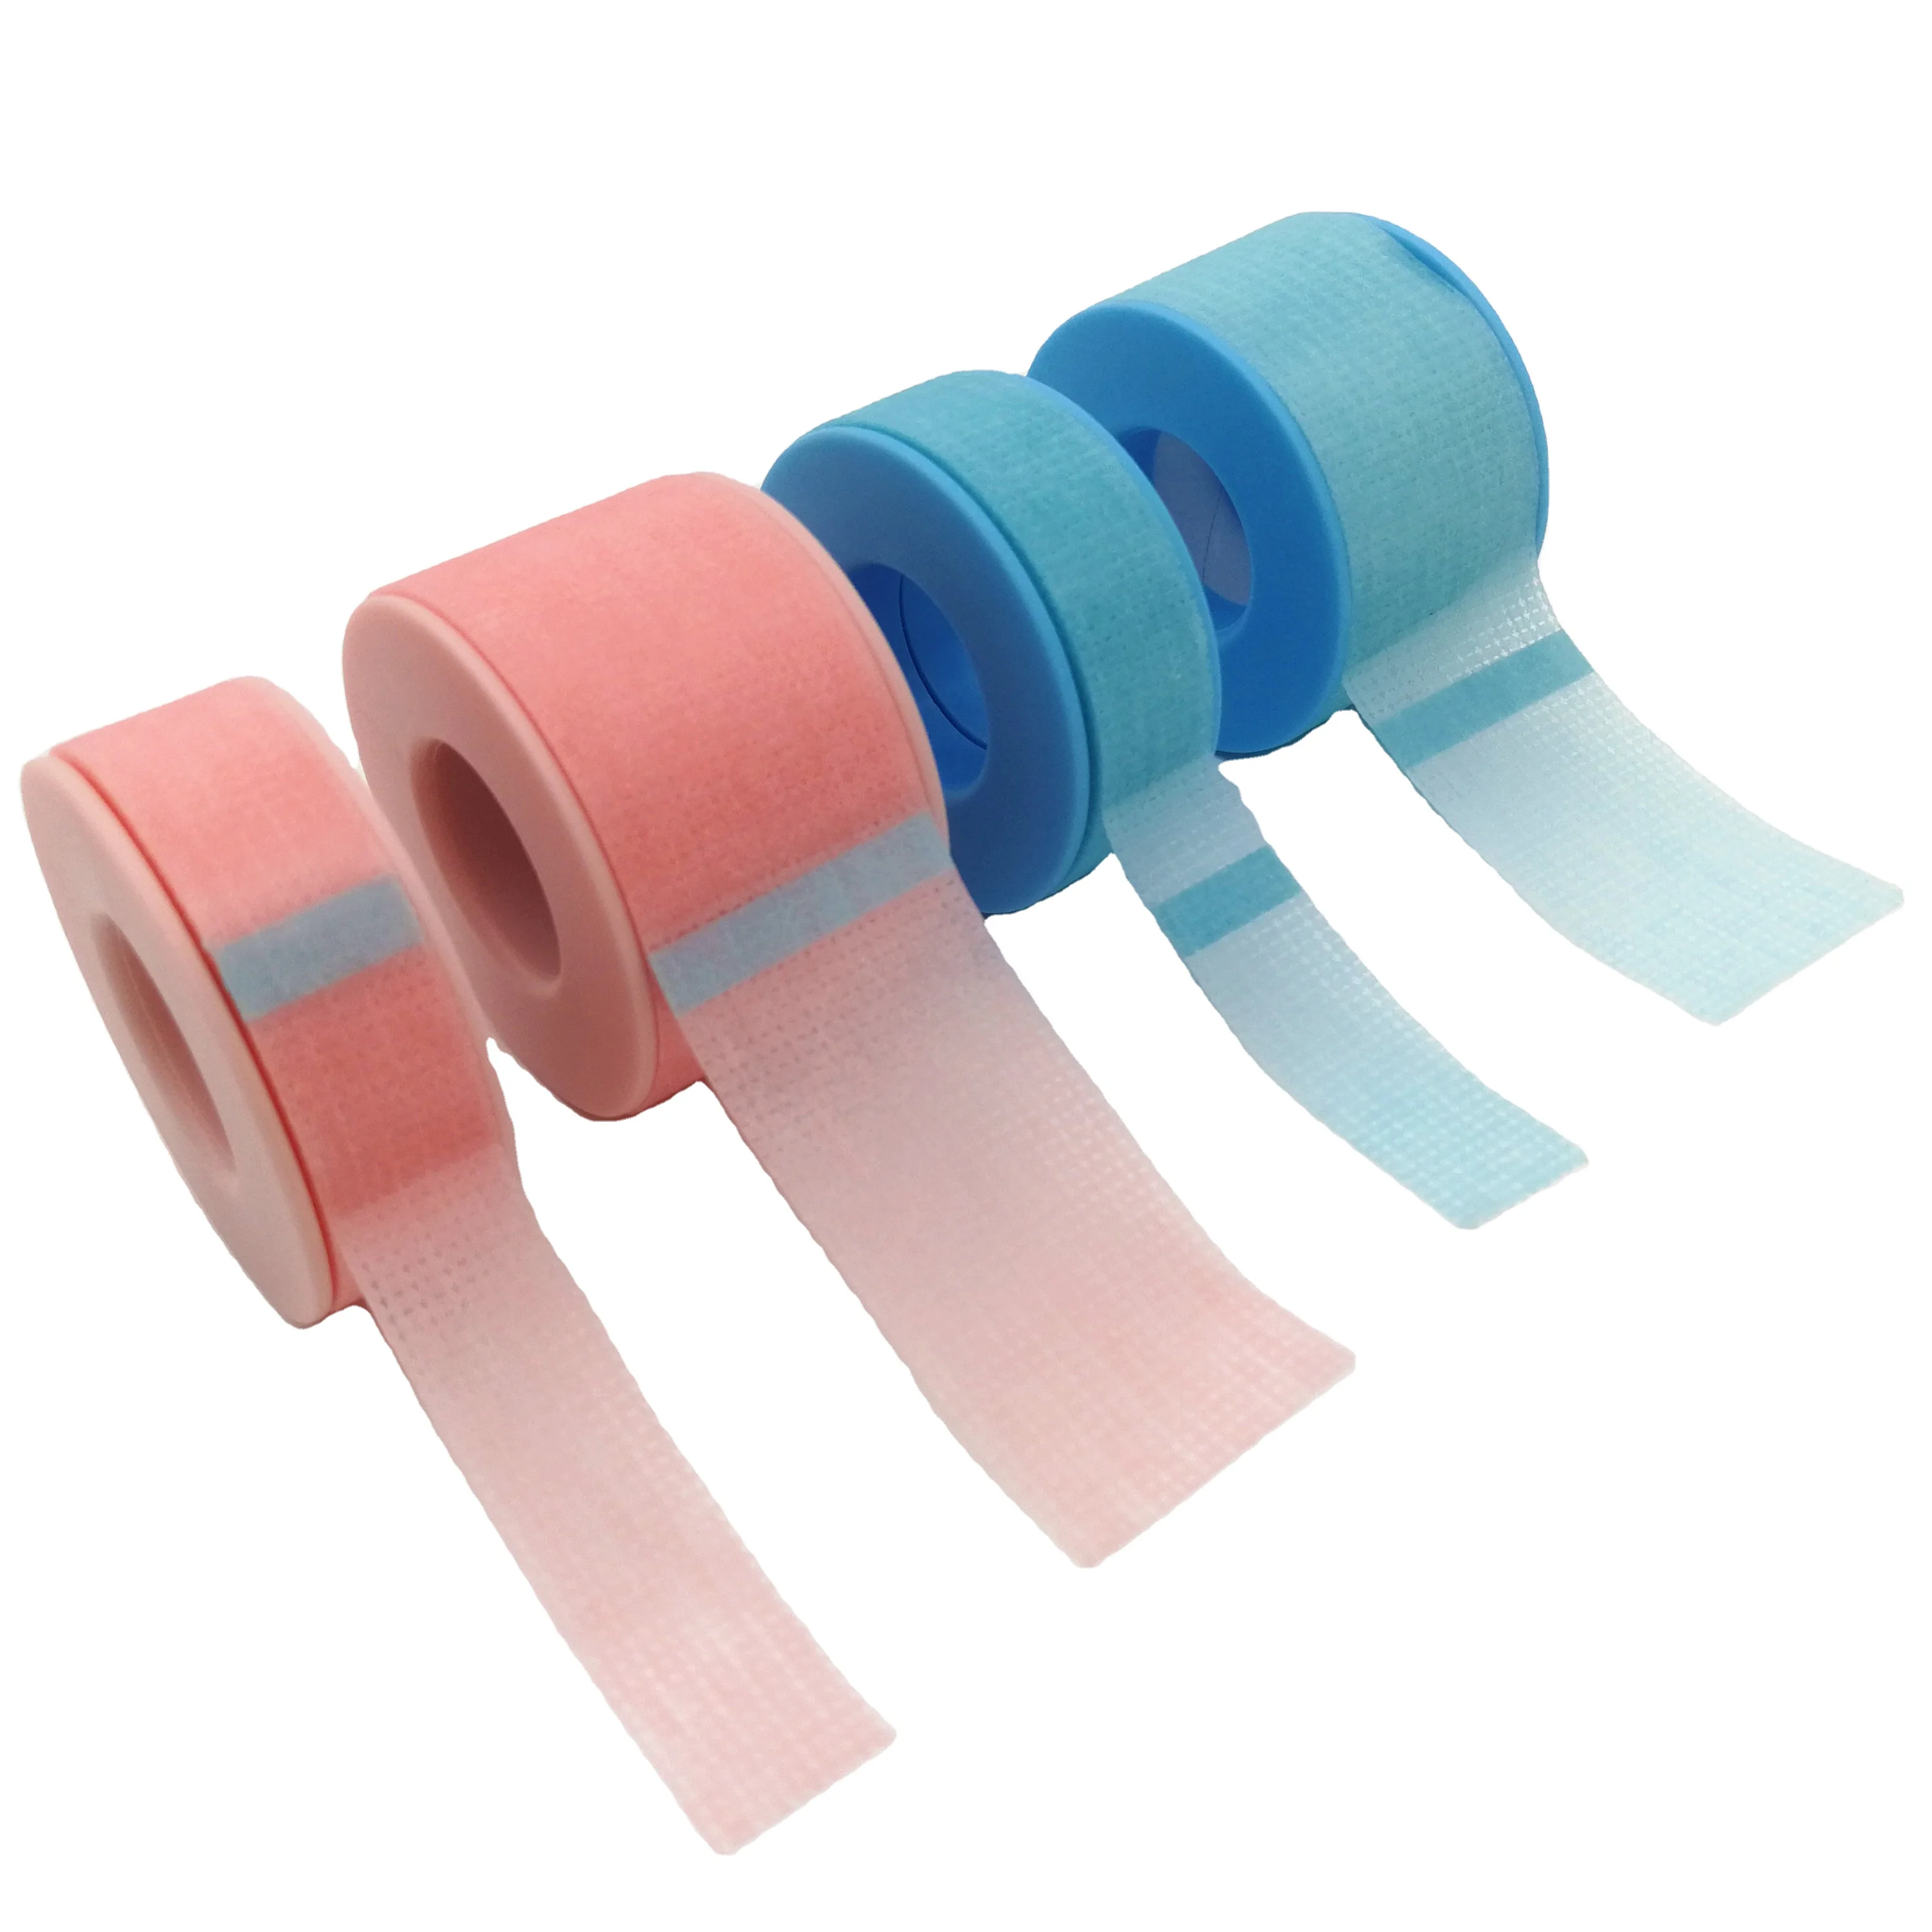 

Professional Pink Blue Nexcare Sensitive Skin Under Eye Lash Pink Eyelash Extension Medical Silicone Gel Adhesive Tape, Blue pink